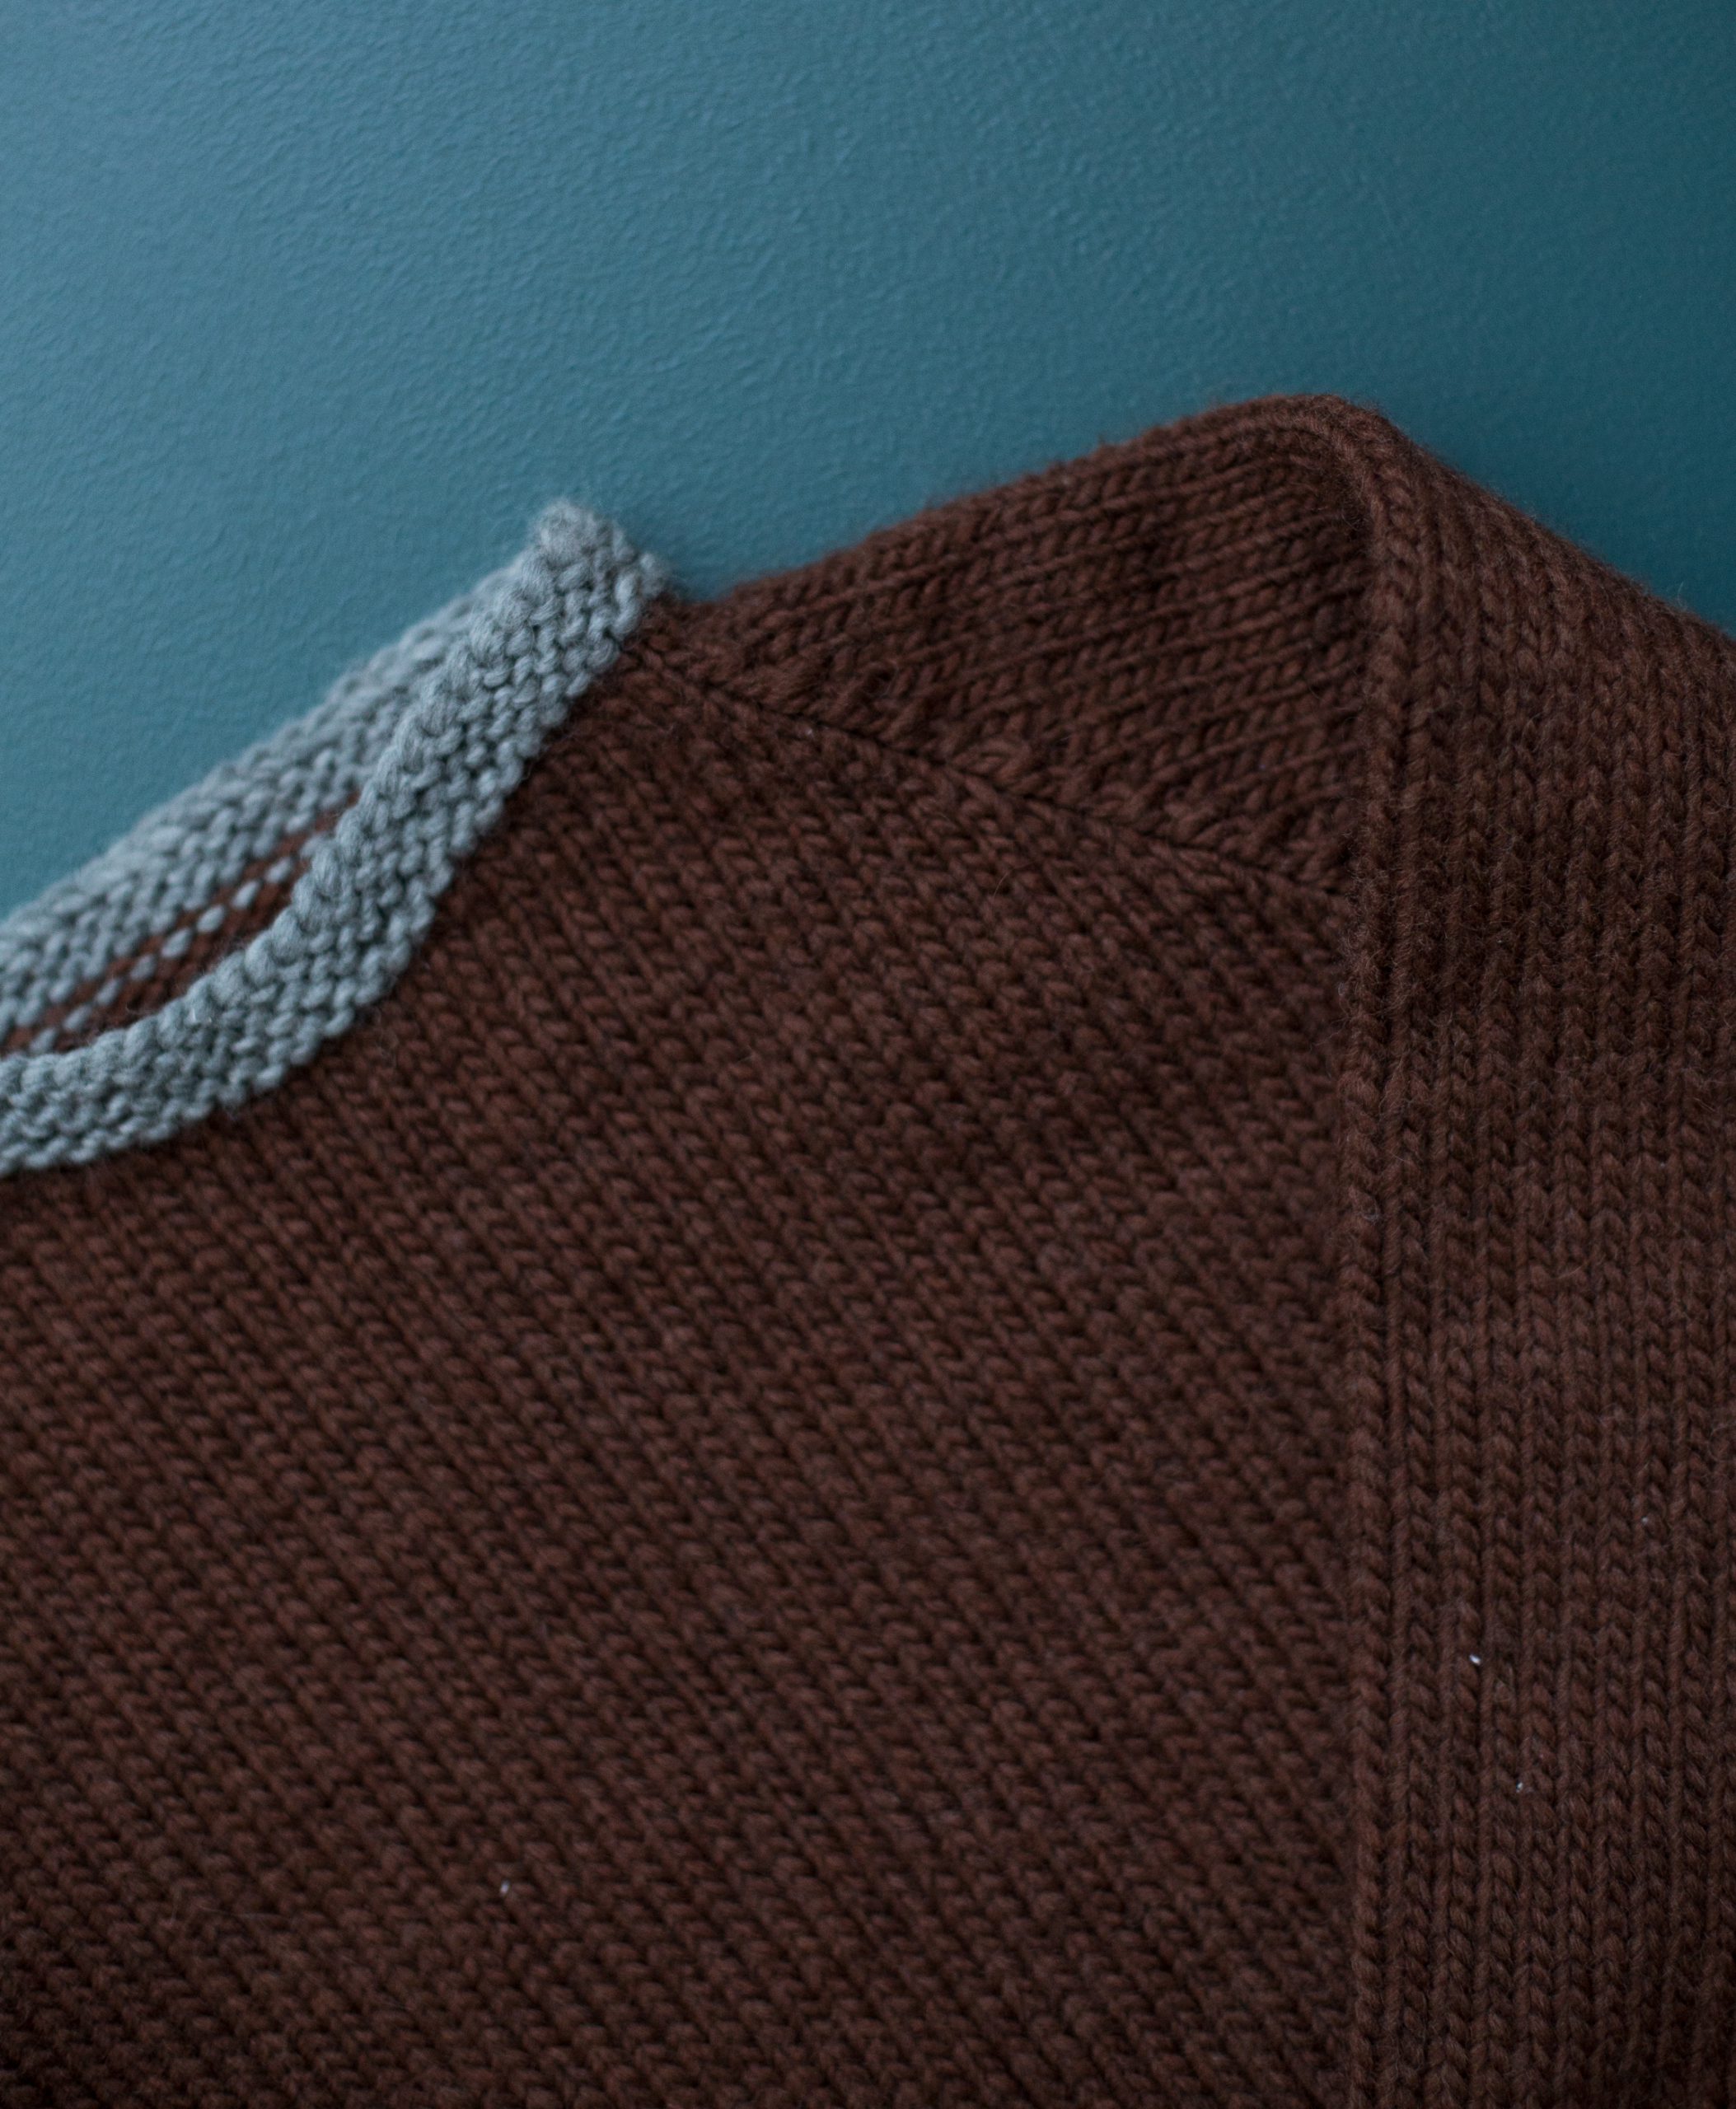  - Let´s plat sweater | Kids raglan sweater knitting pattern - by HipKnitShop - 30/11/2017